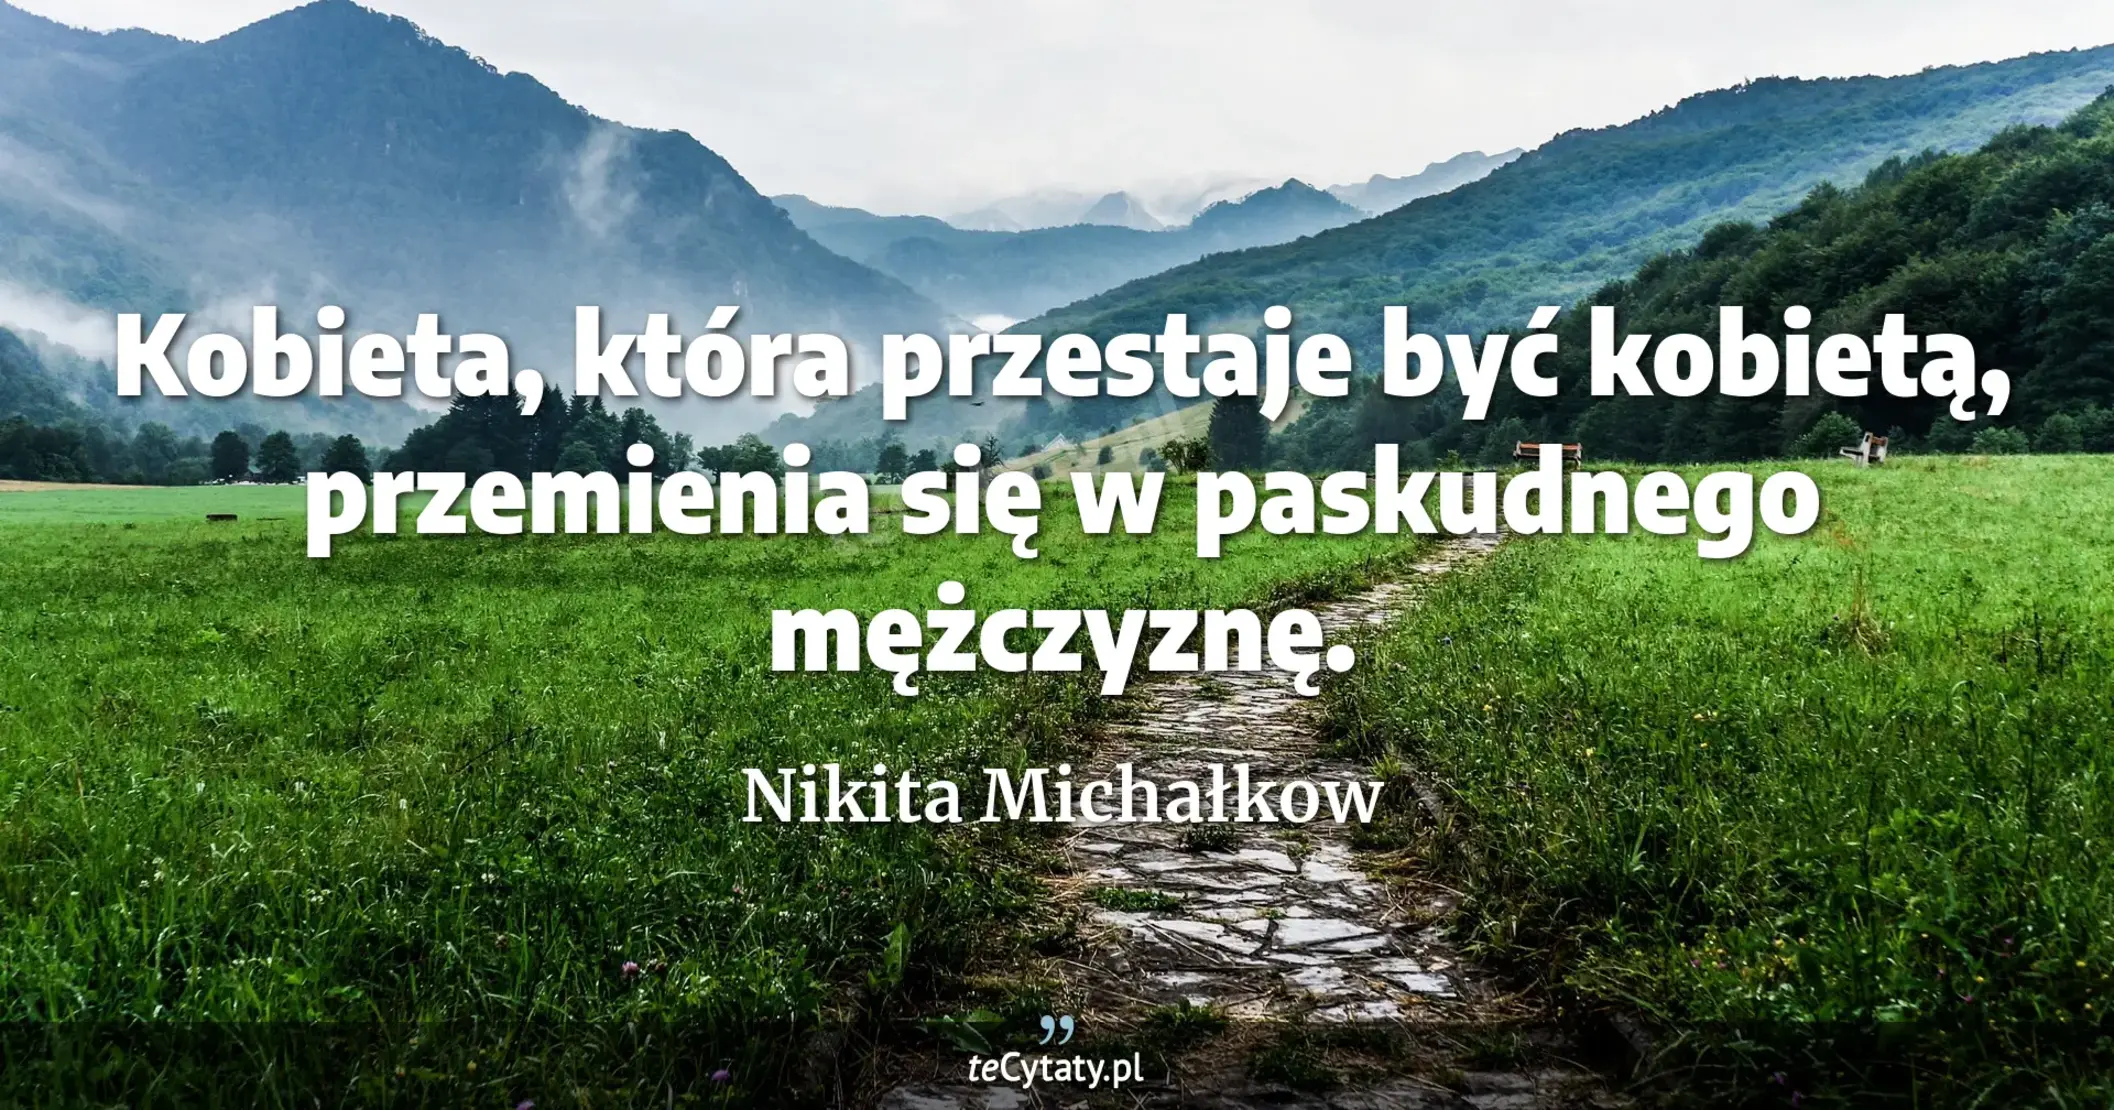 Kobieta, która przestaje być kobietą, przemienia się w paskudnego mężczyznę. - Nikita Michałkow